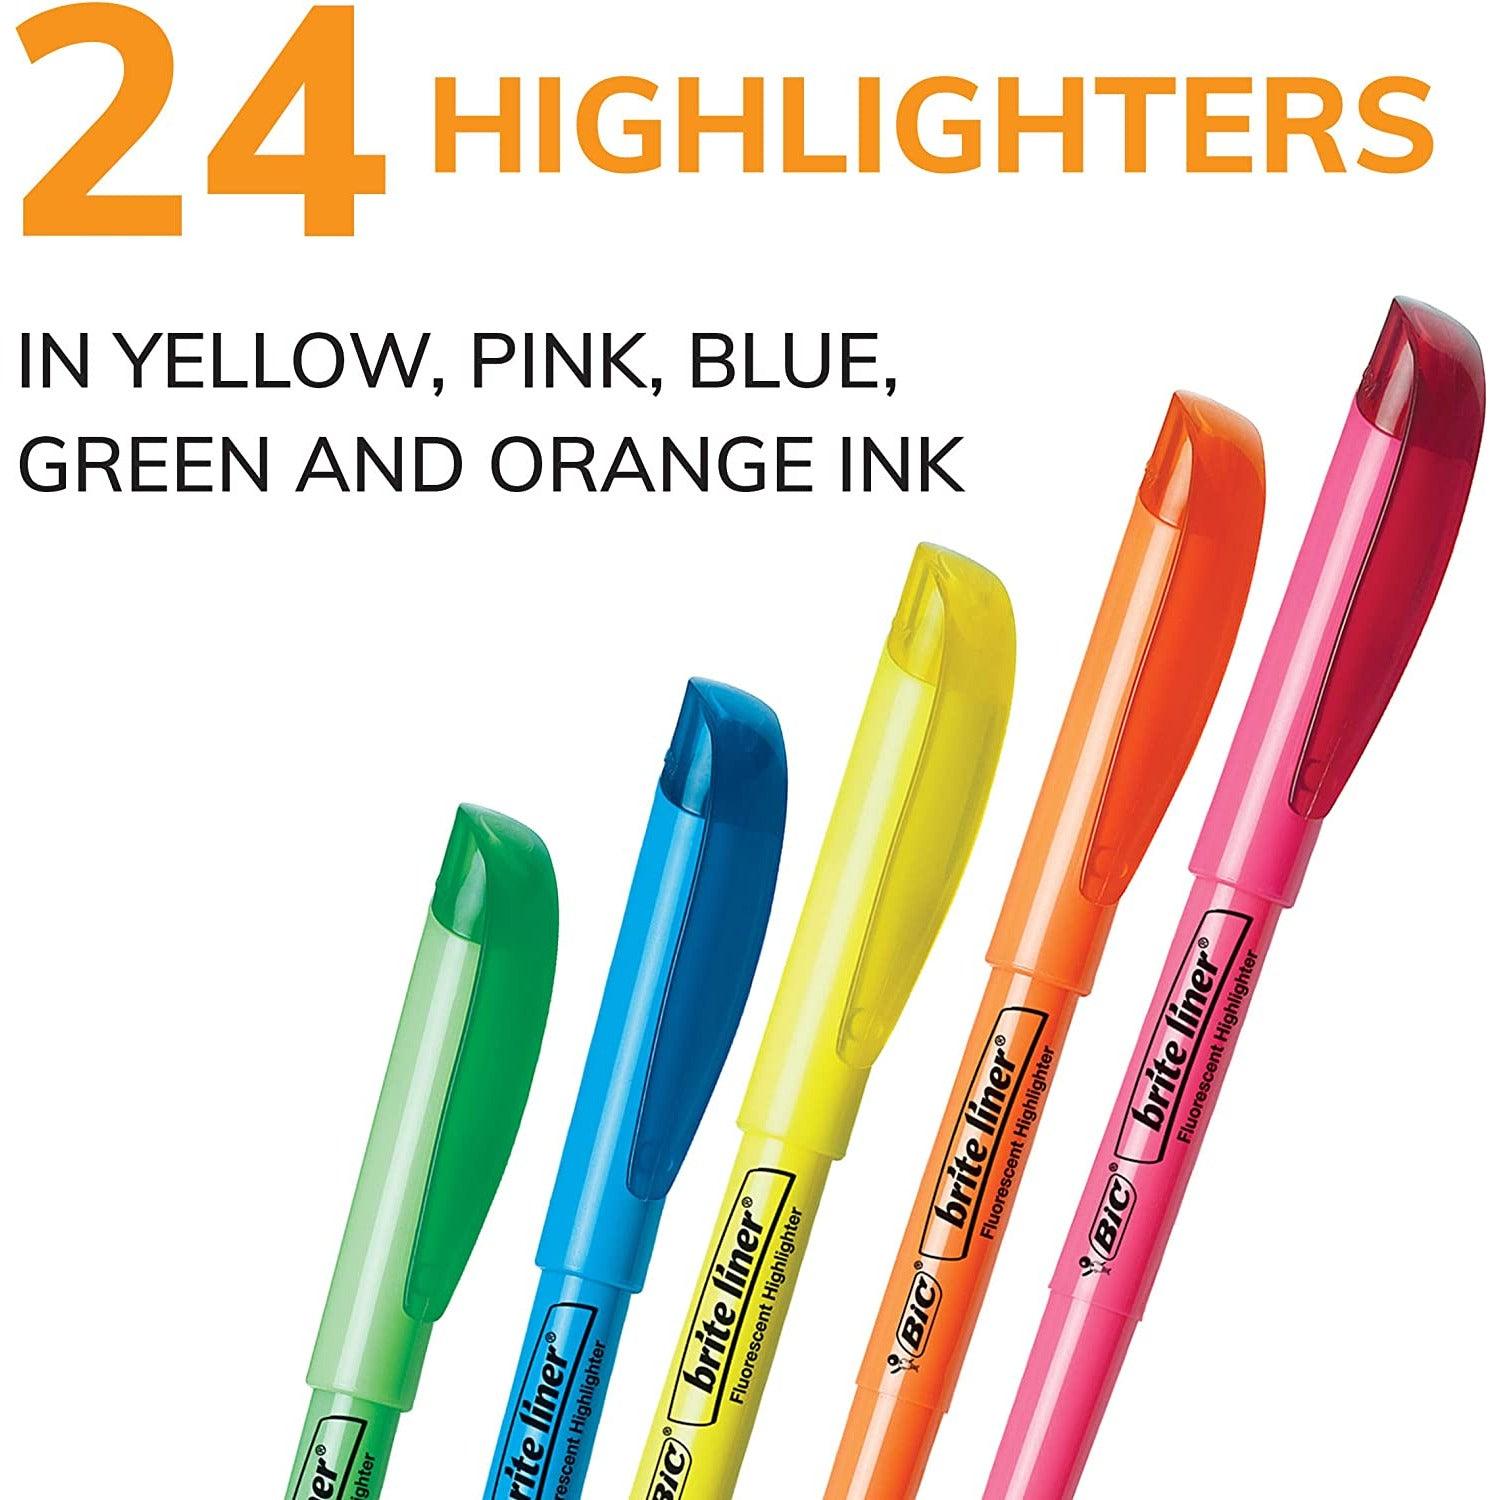 قلم هايلايتر من بيك برايت لاينر ، طرف إزميل ، ألوان متنوعة ، 24 قطعة